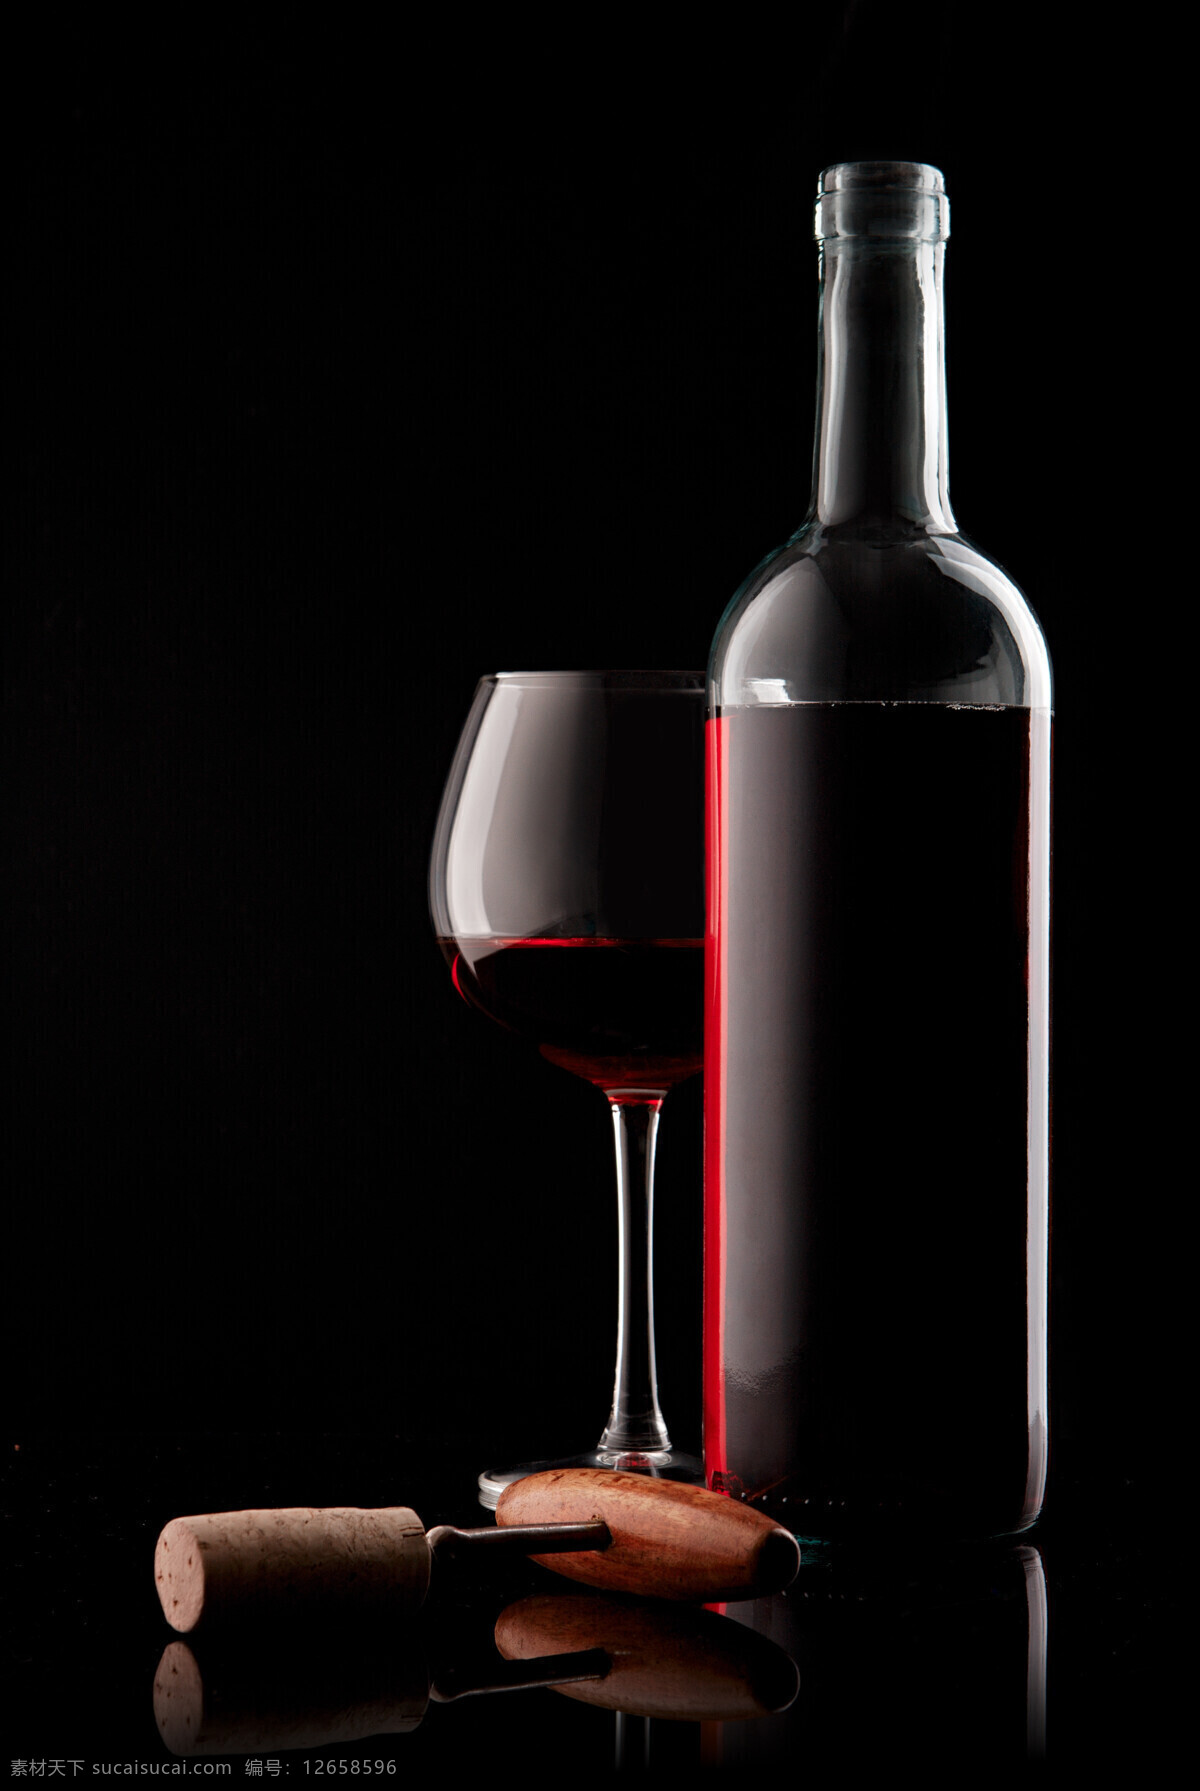 葡萄 美酒 红酒与葡萄 饮品 红酒 葡萄酒 水果 绿叶 酒瓶 开酒器 酒杯 高脚杯 玻璃杯 酒类图片 餐饮美食